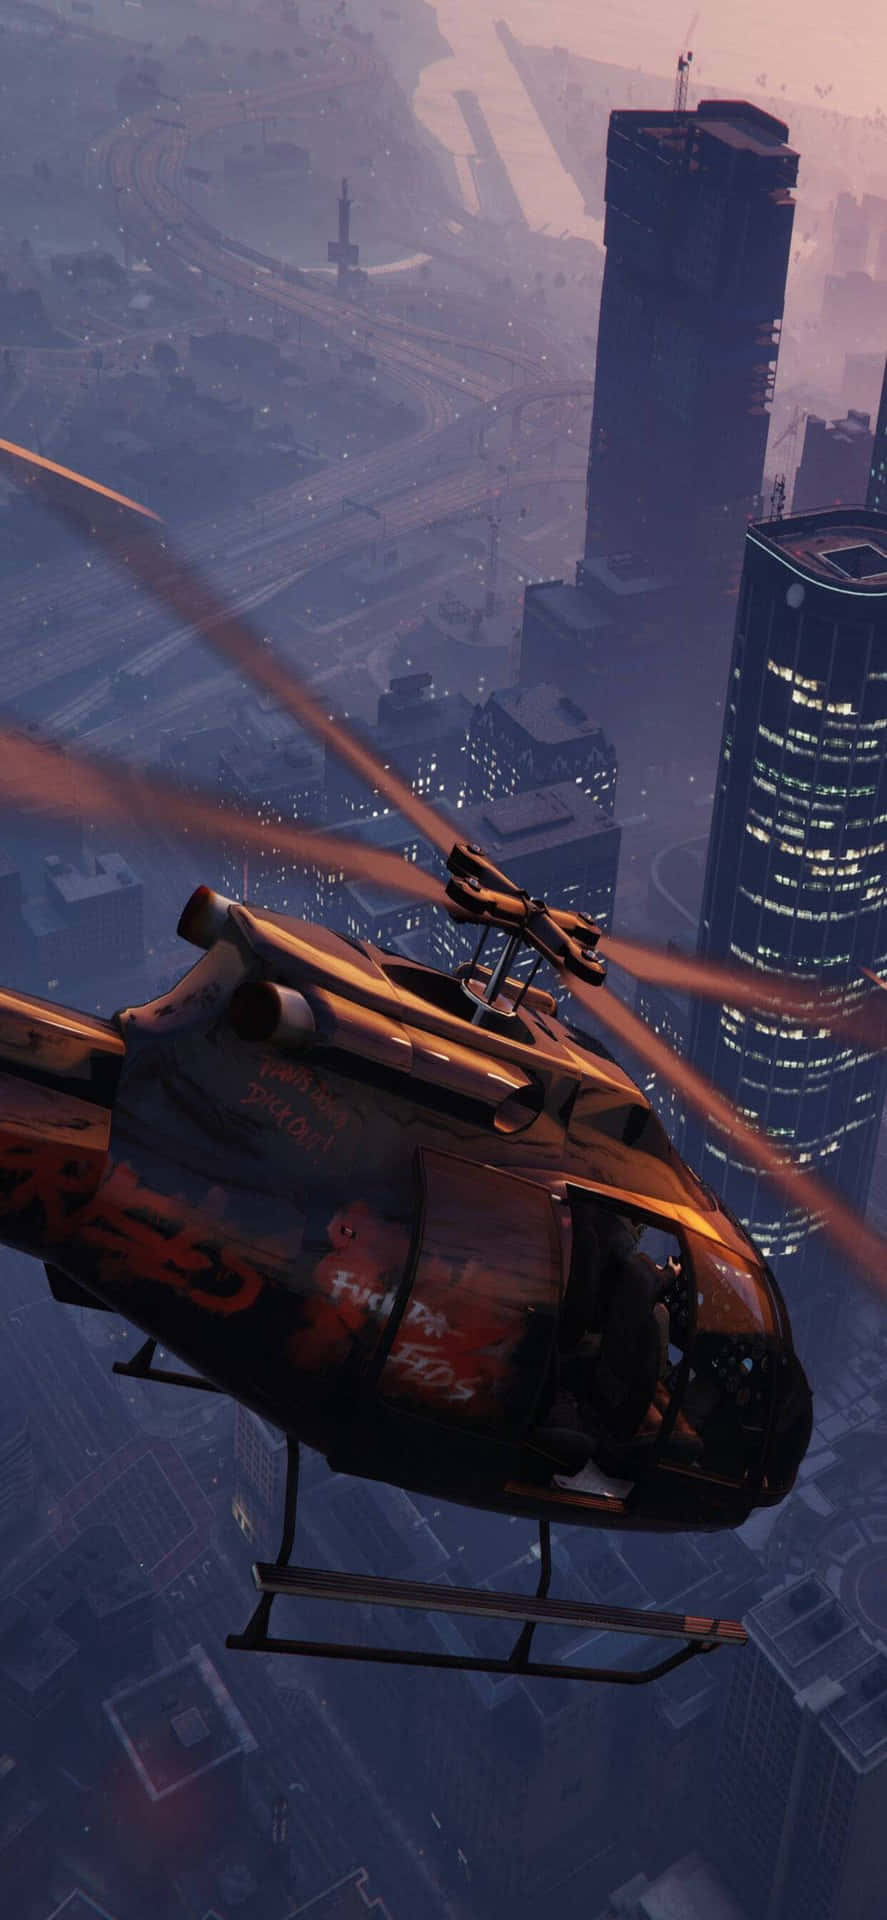 Iphonexs Max Bakgrund Från Spelet Grand Theft Auto V Med En Helikopter Som Flyger Runt.